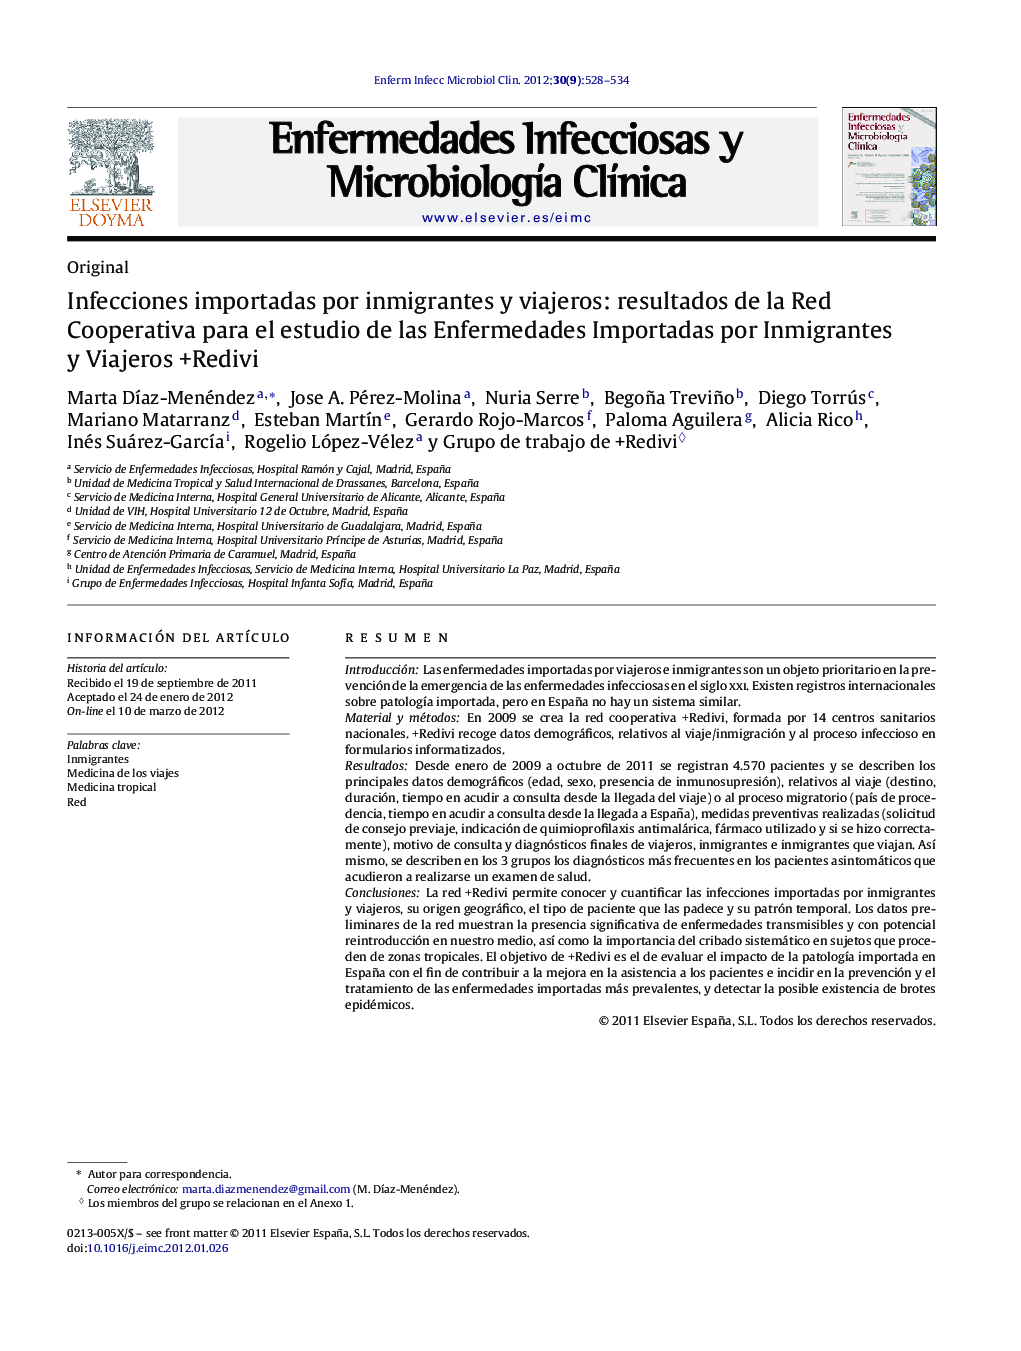 Infecciones importadas por inmigrantes y viajeros: resultados de la Red Cooperativa para el estudio de las Enfermedades Importadas por Inmigrantes y Viajeros +Redivi